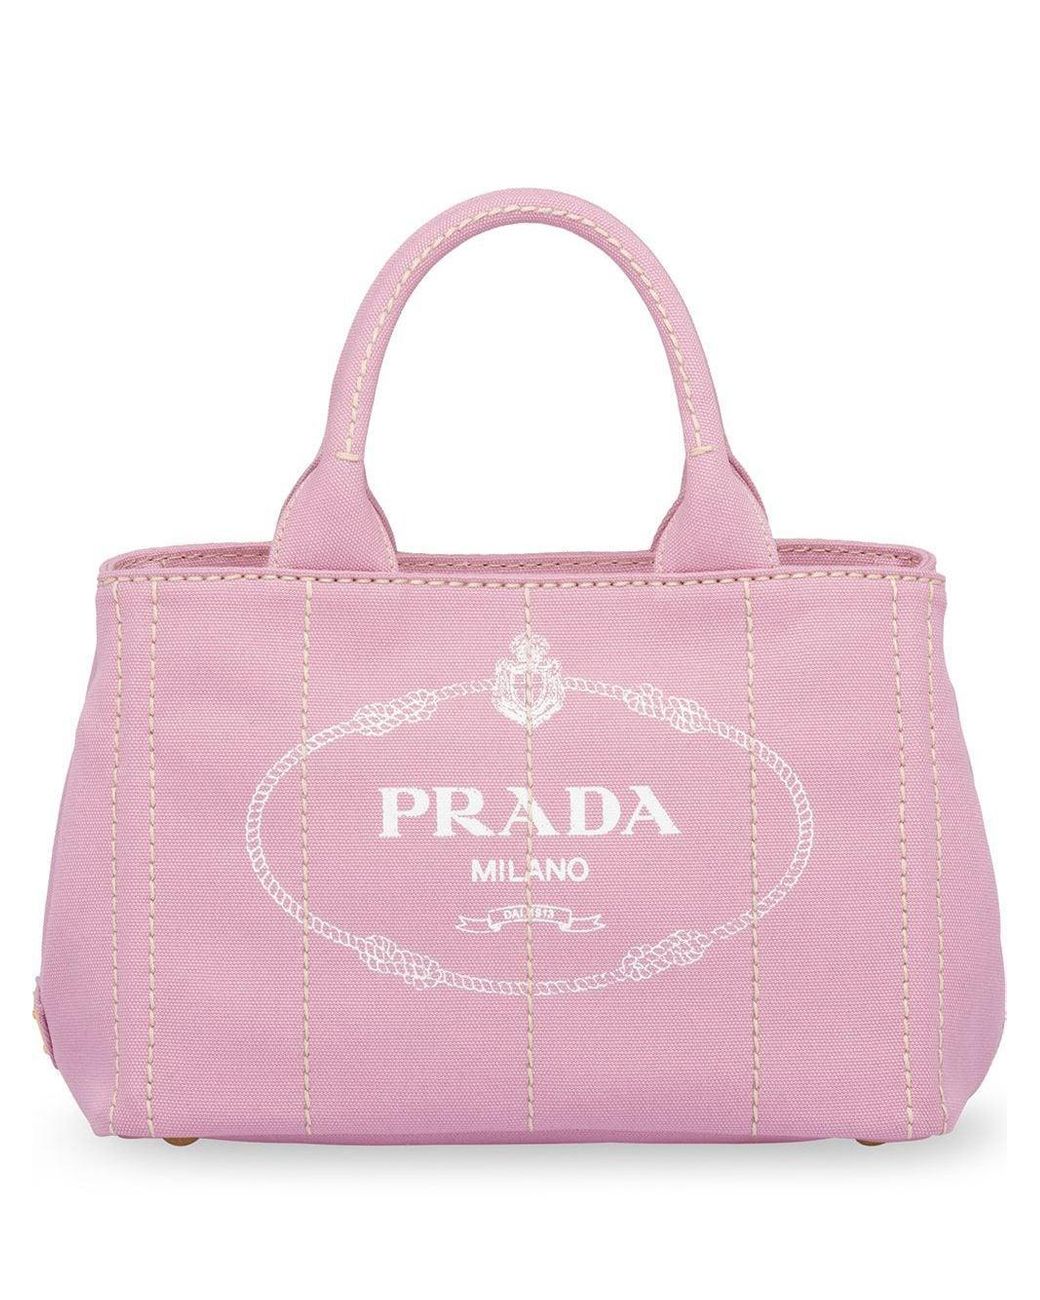 Prada Fabric Logo Printed Tote in Pink | Lyst